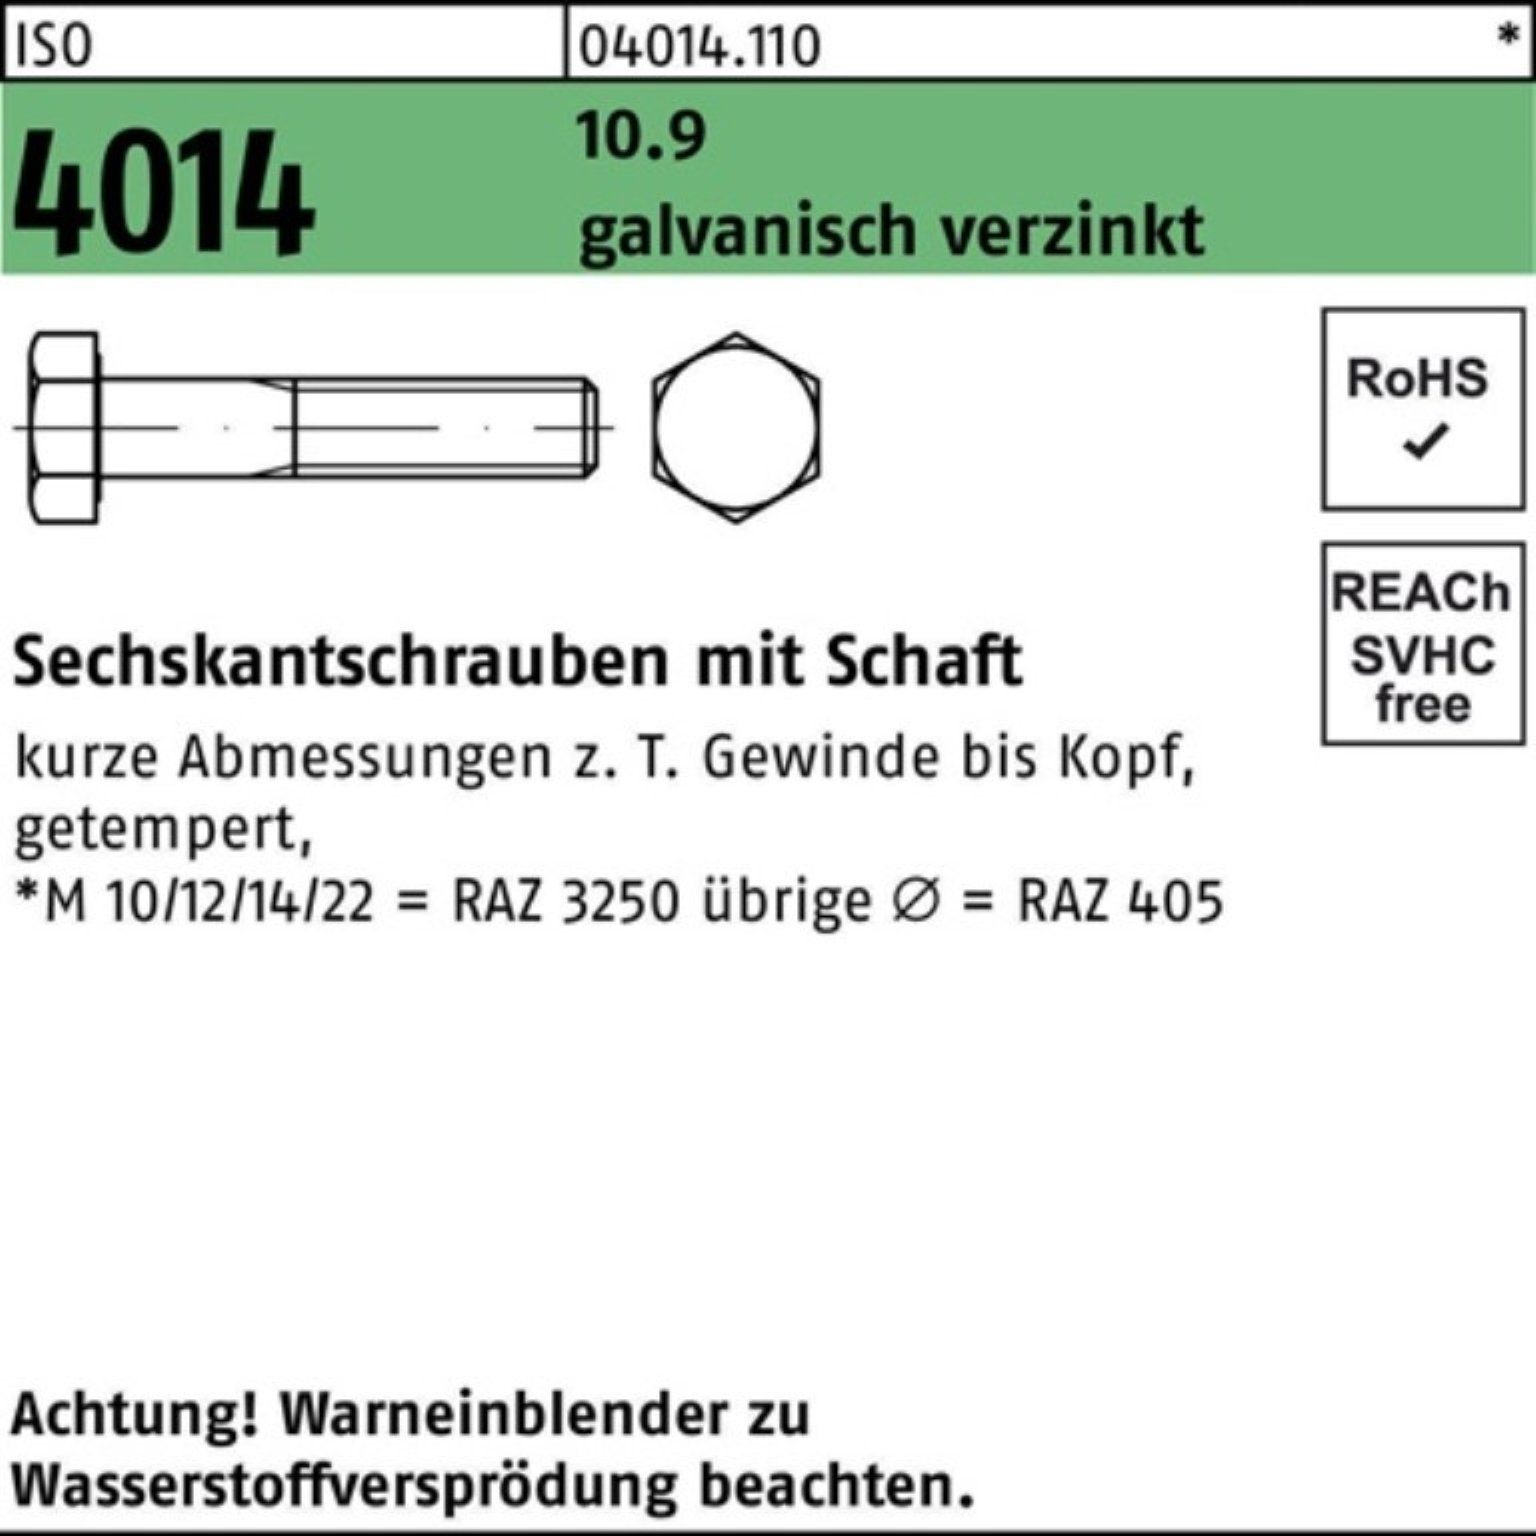 Bufab Pack 10.9 Schaft Sechskantschraube 2 galv.verz. 85 M20x 4014 ISO 100er Sechskantschraube